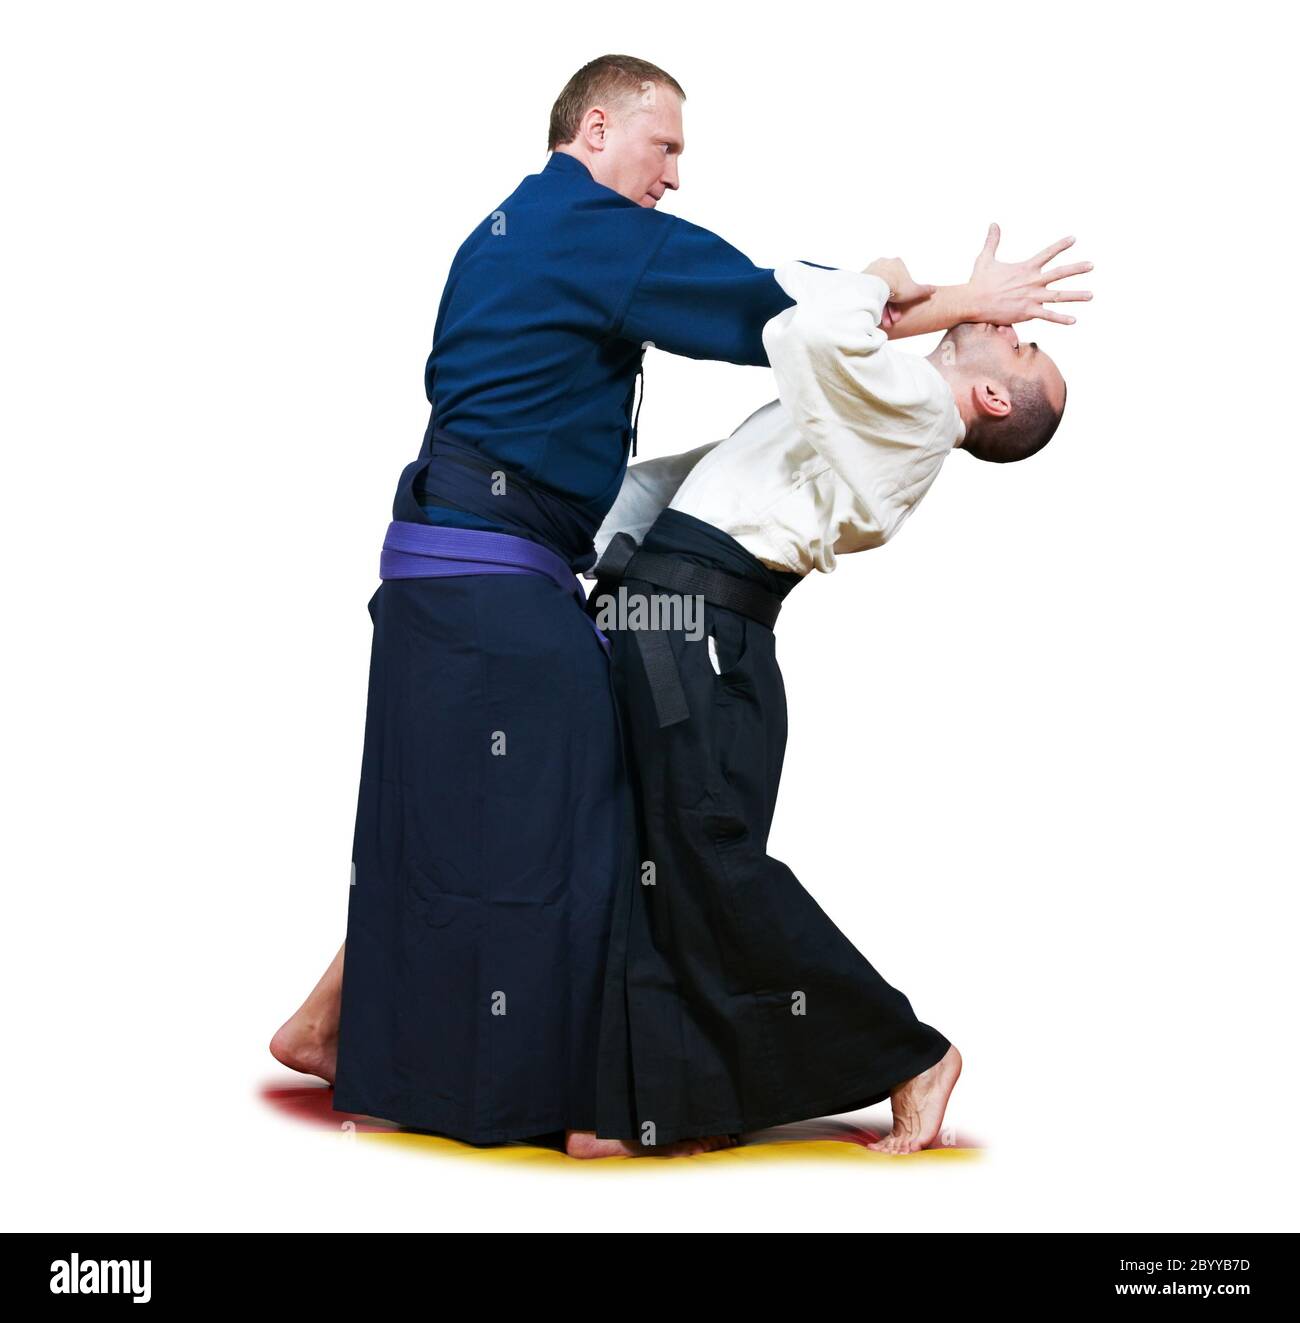 Gorjón de dos combatientes del jujitsu Foto de stock